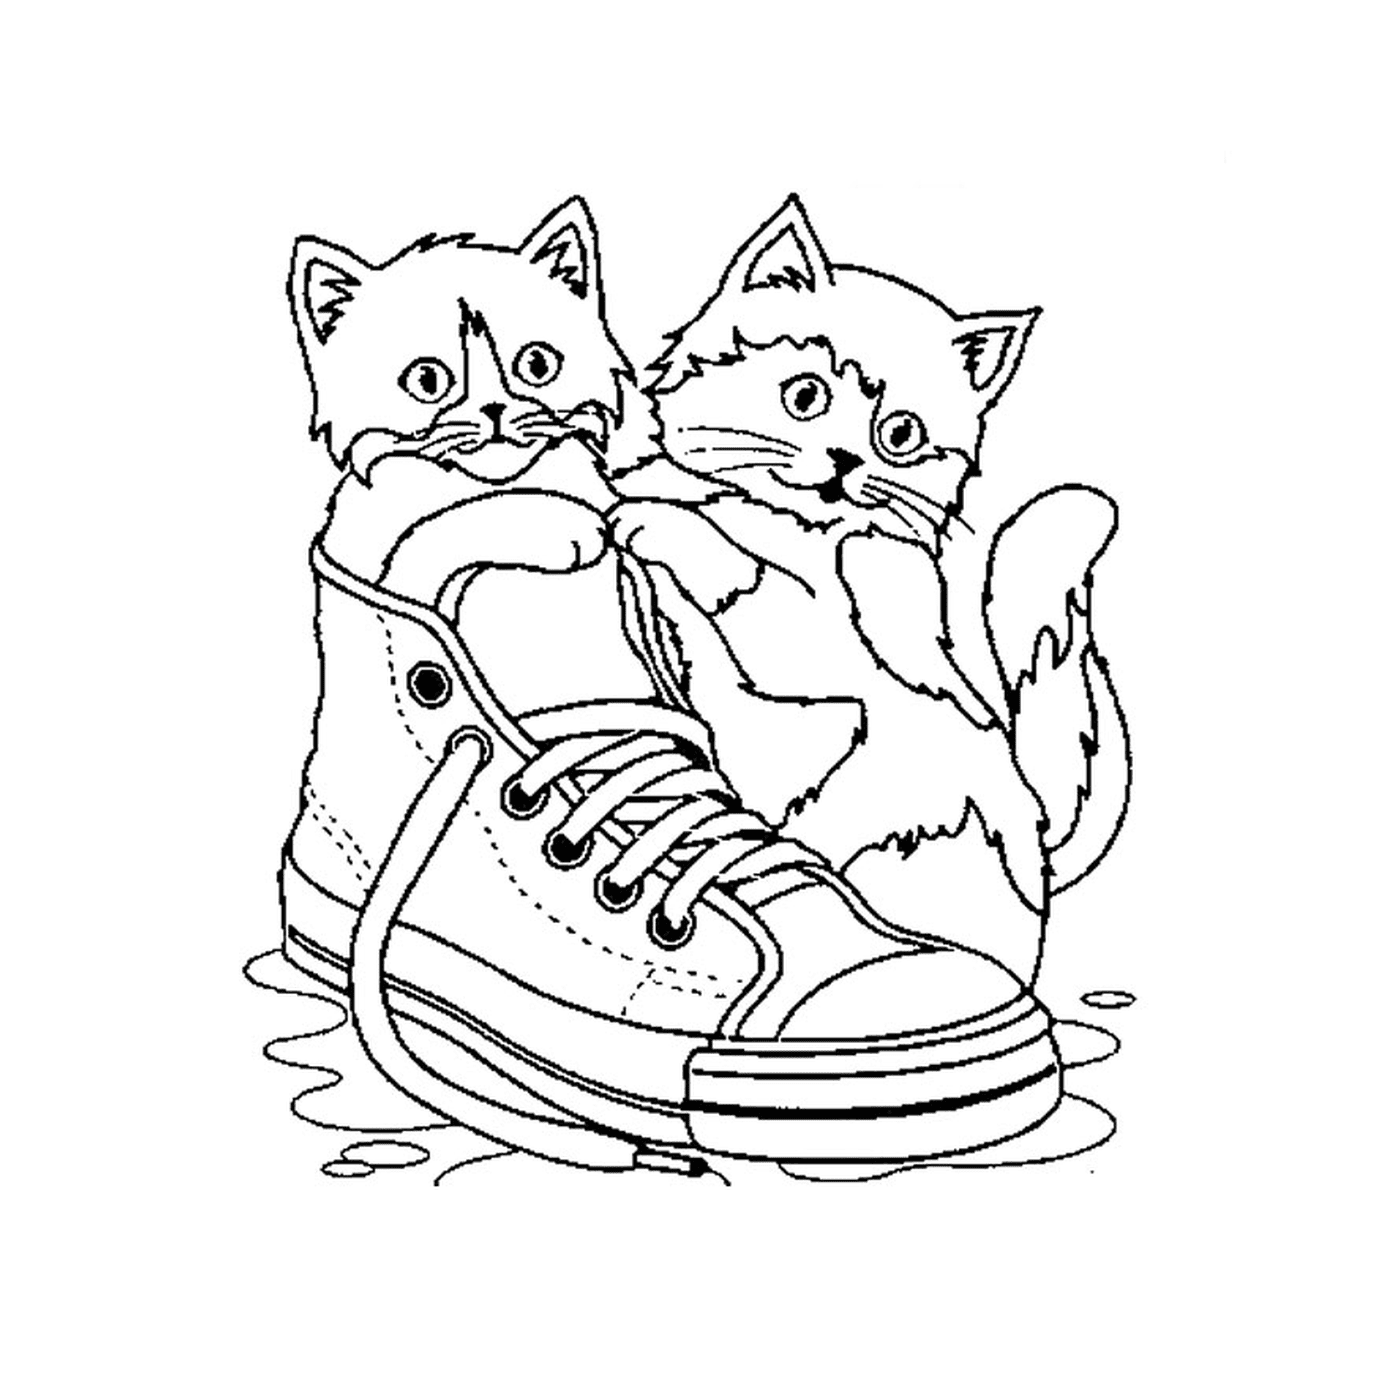  Zwei Katzen sitzen auf einem Schuh im Wasser 